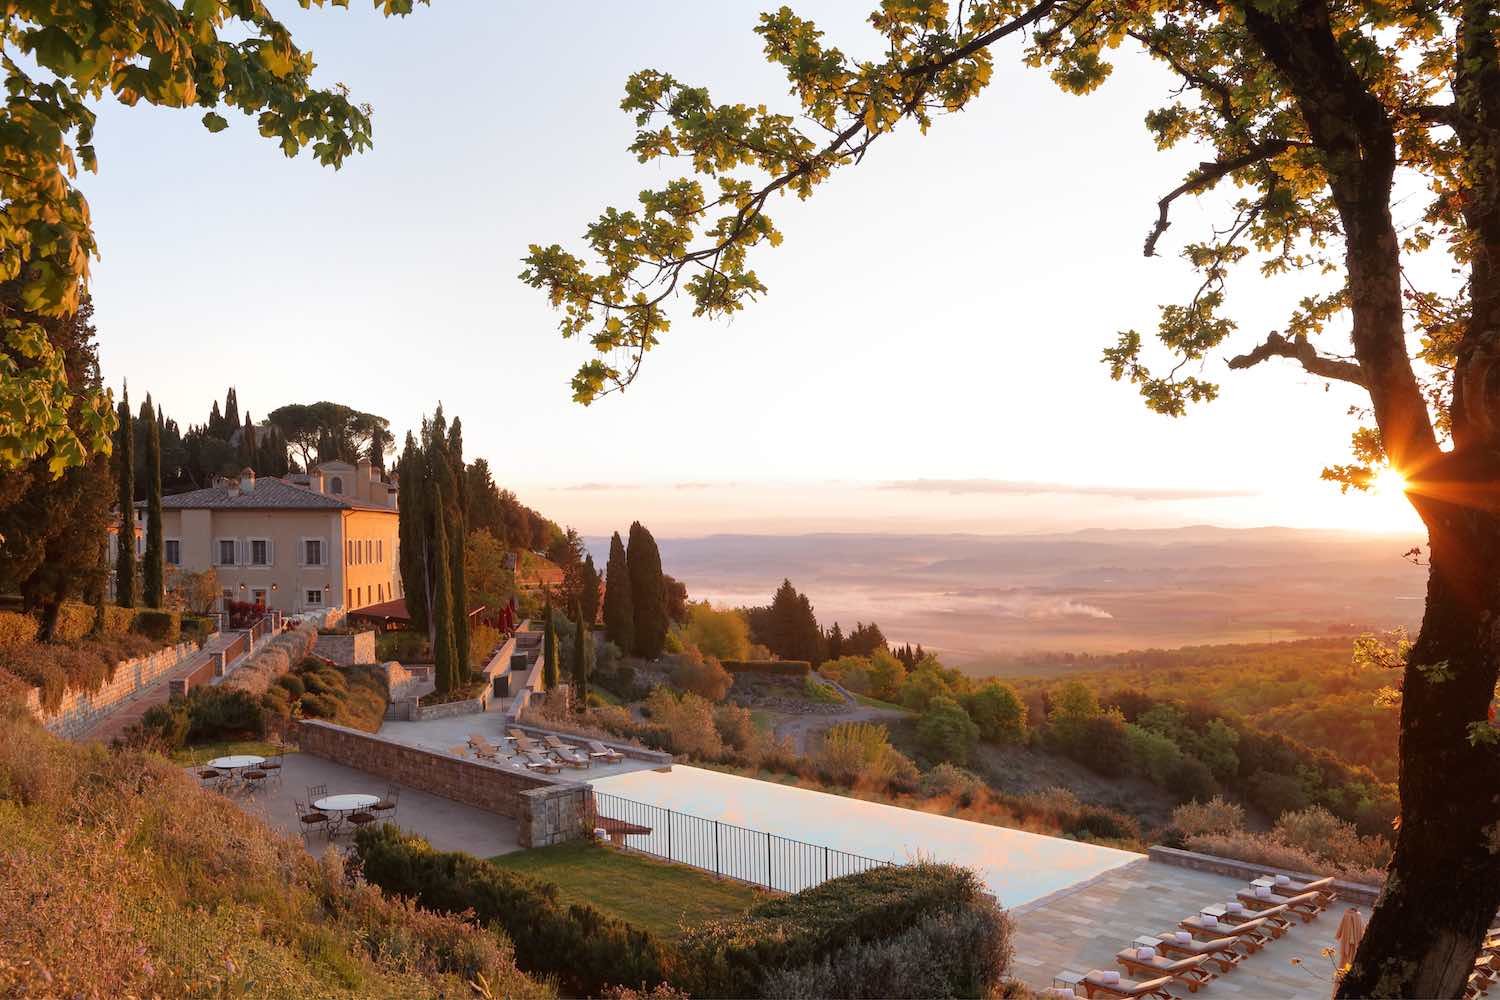 Al Rosewood Castoglio del Bosco, resort 5 stelle in Toscana, Val d'Orcia, Montalcino è iniziata una lunga stagione dedicata al gusto